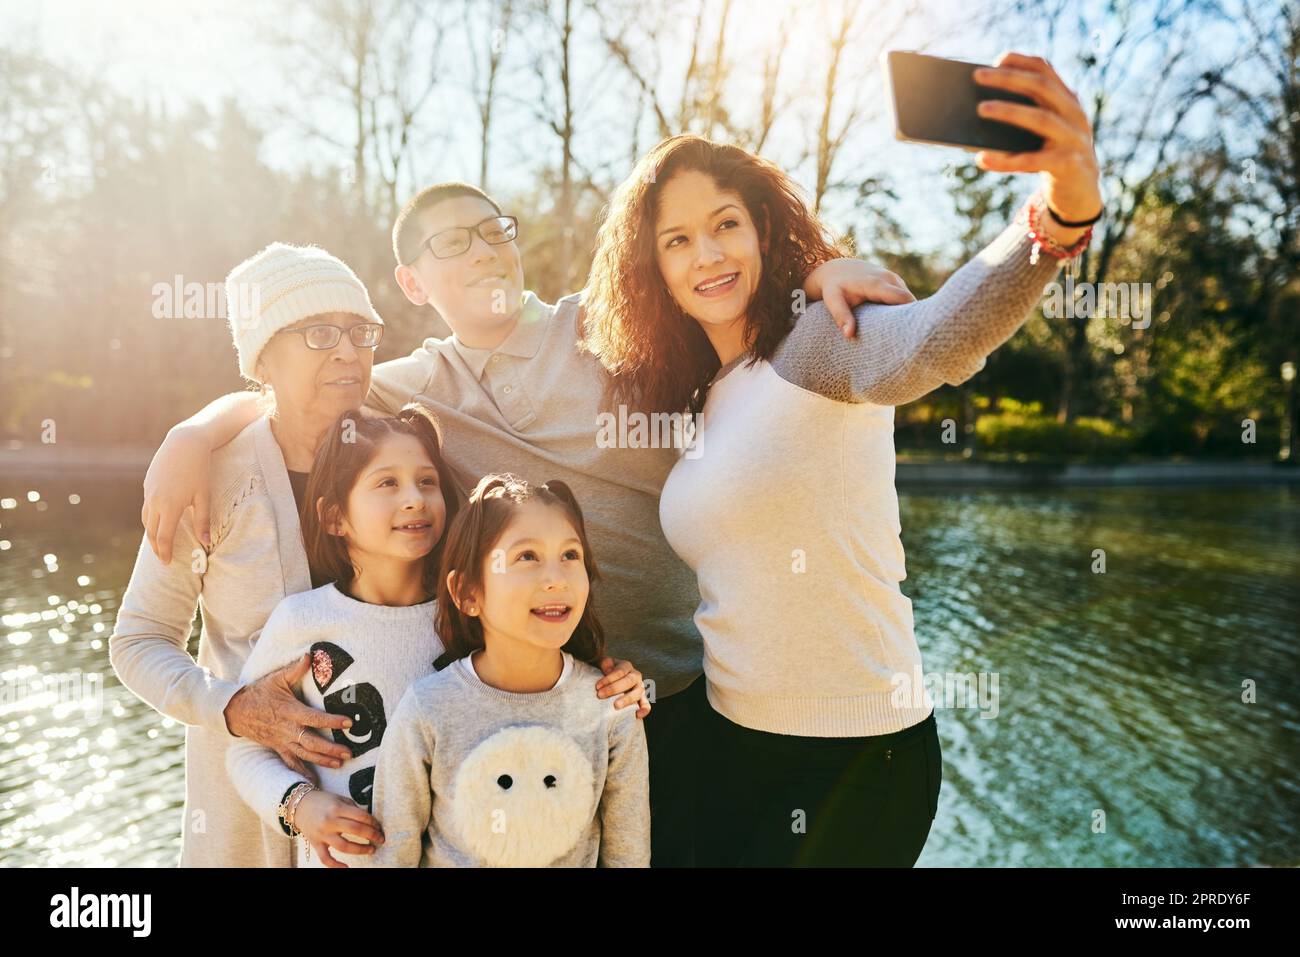 Sie wissen nicht, wie viele Momente Sie haben, fangen sie ein. Eine glückliche Familie verbringt Zeit zusammen im Freien. Stockfoto